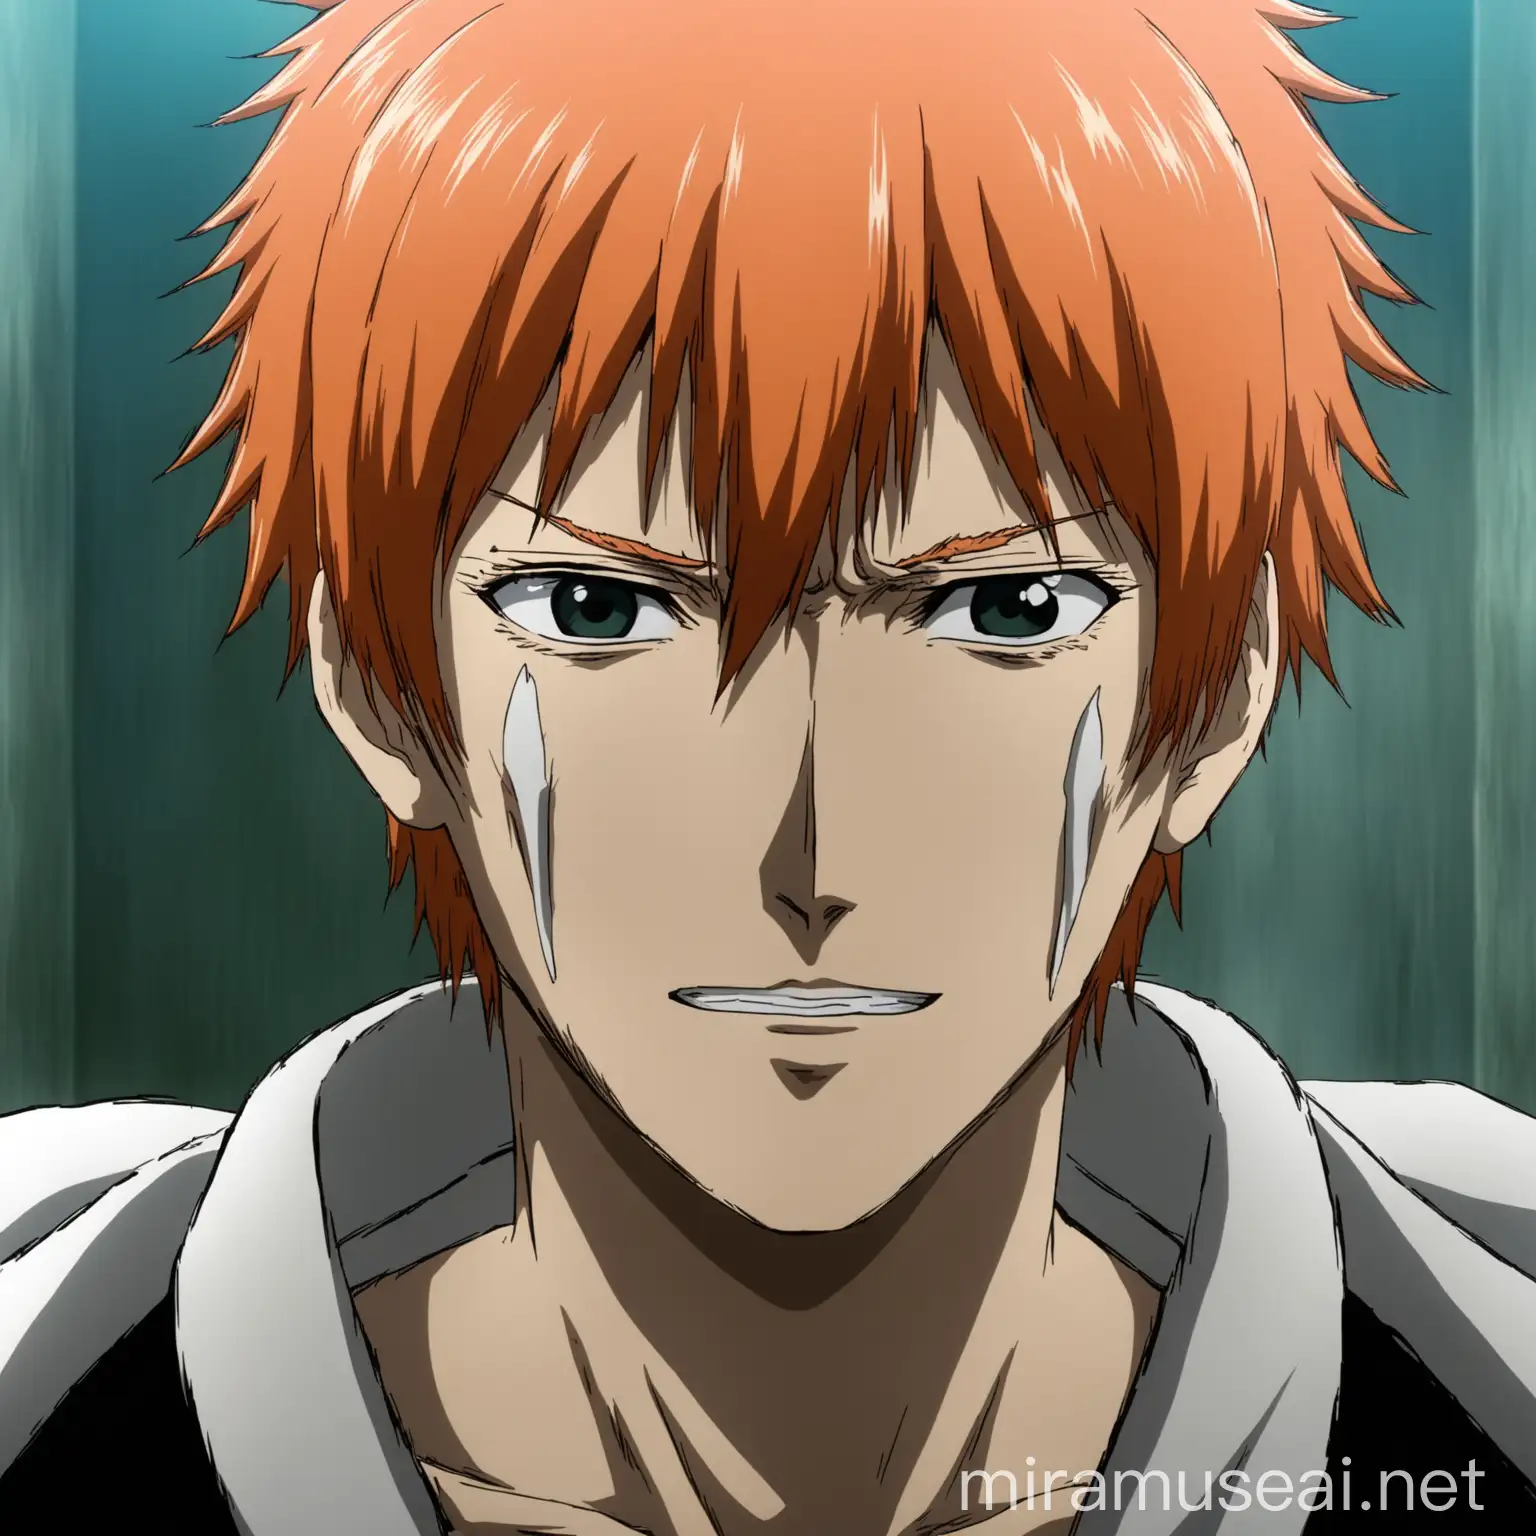 imagem de rosto Ichigo, do anime bleach, imagem frontal, vendo para camera
